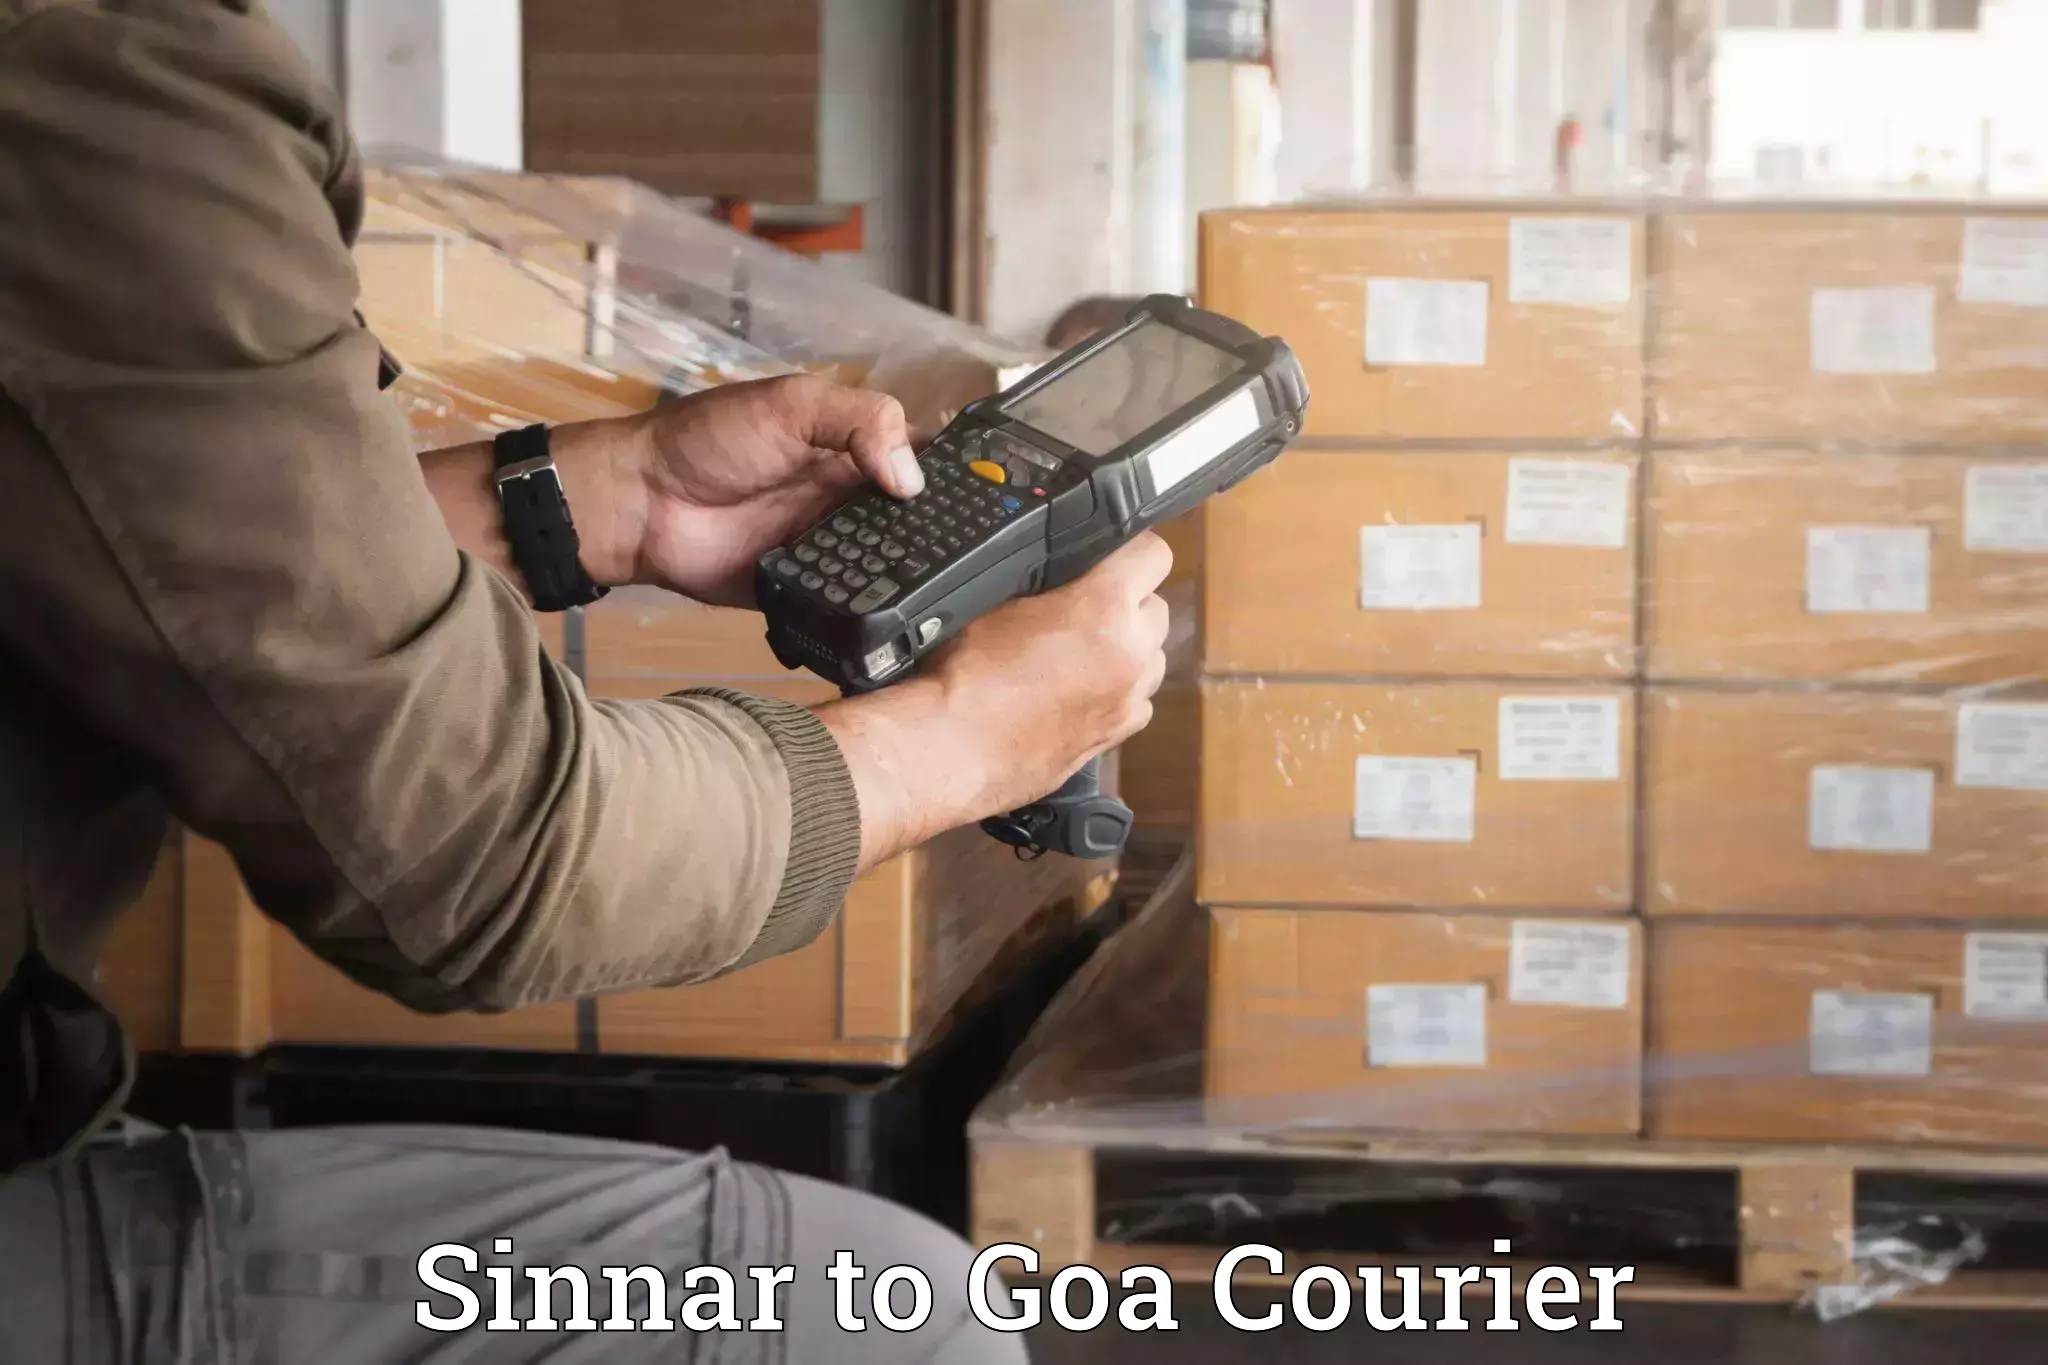 Luggage shipment processing Sinnar to Goa